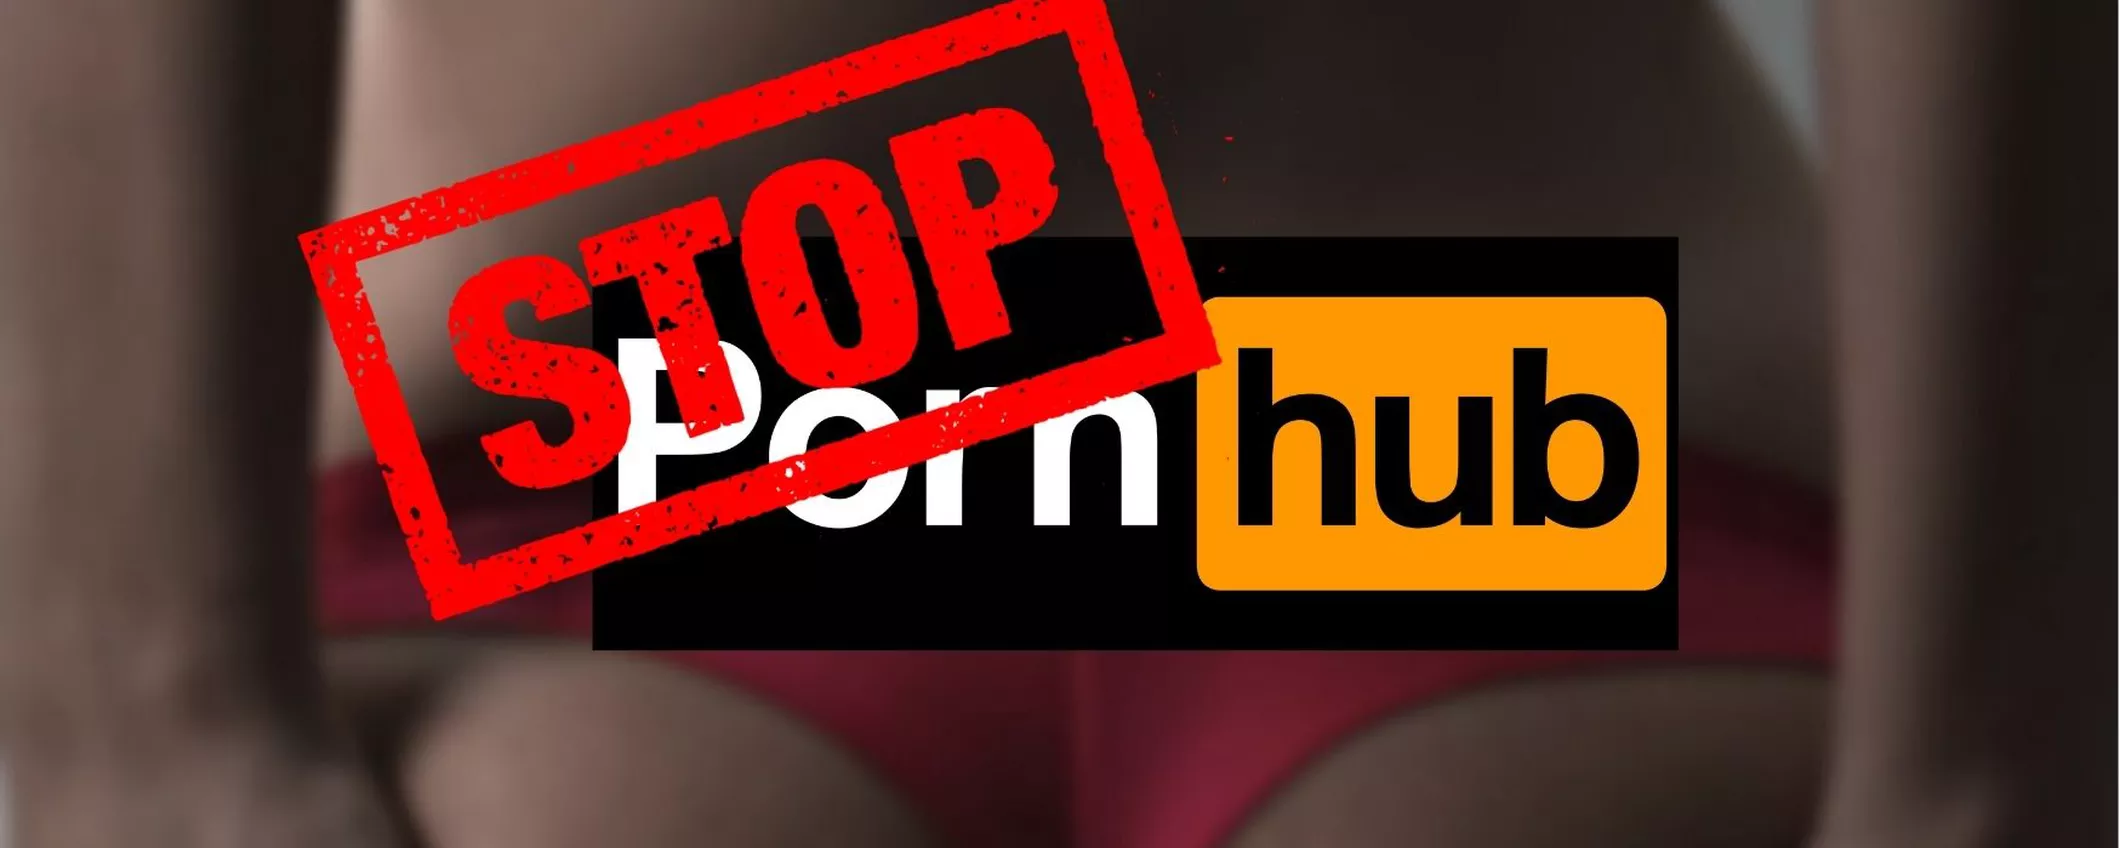 Instagram BANNA definitivamente l'account di Pornhub dalla sua piattaforma